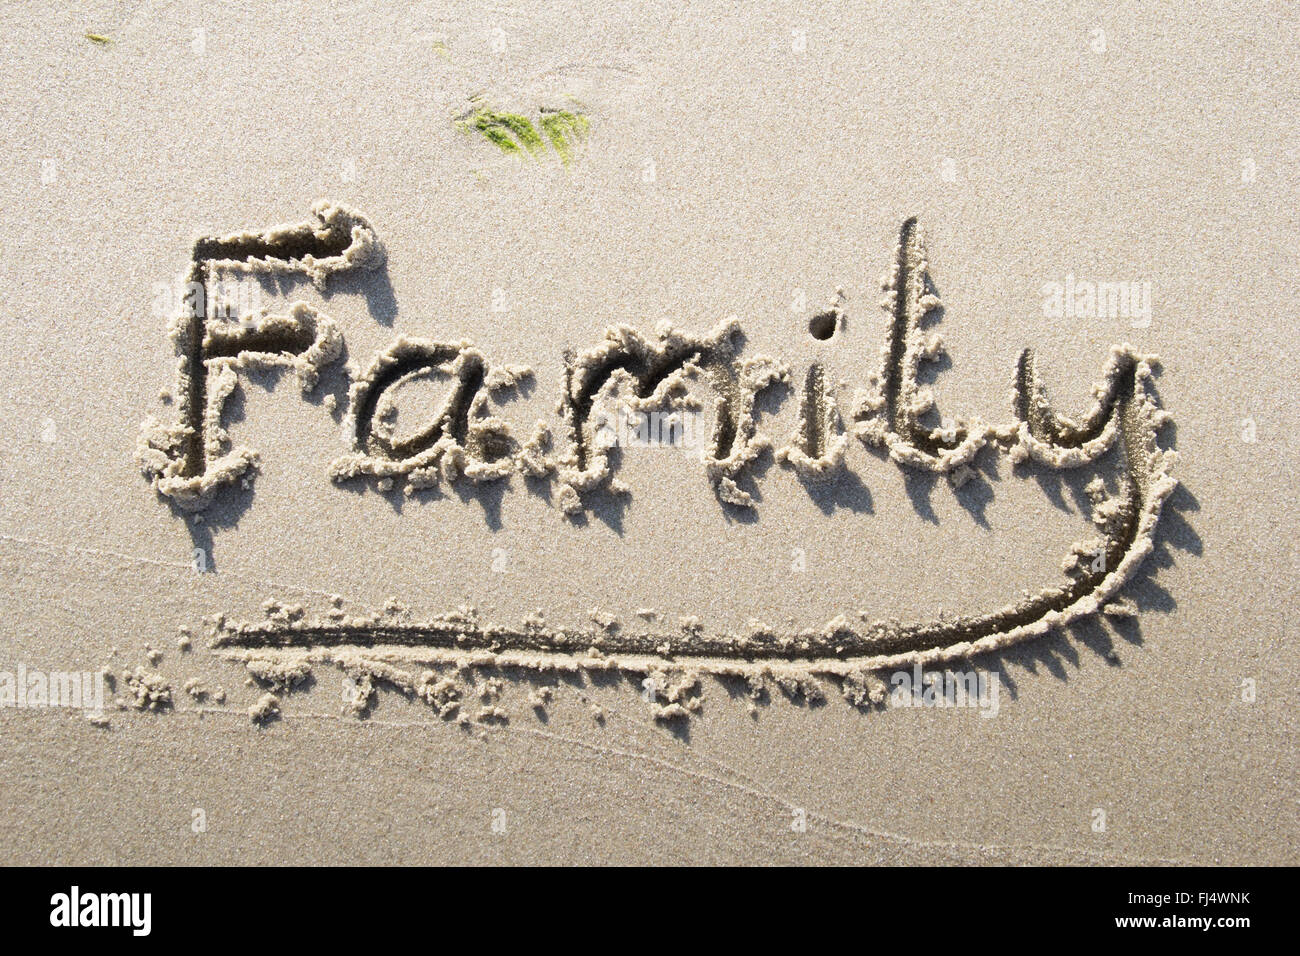 "Famille" écrit sur la plage de sable Banque D'Images